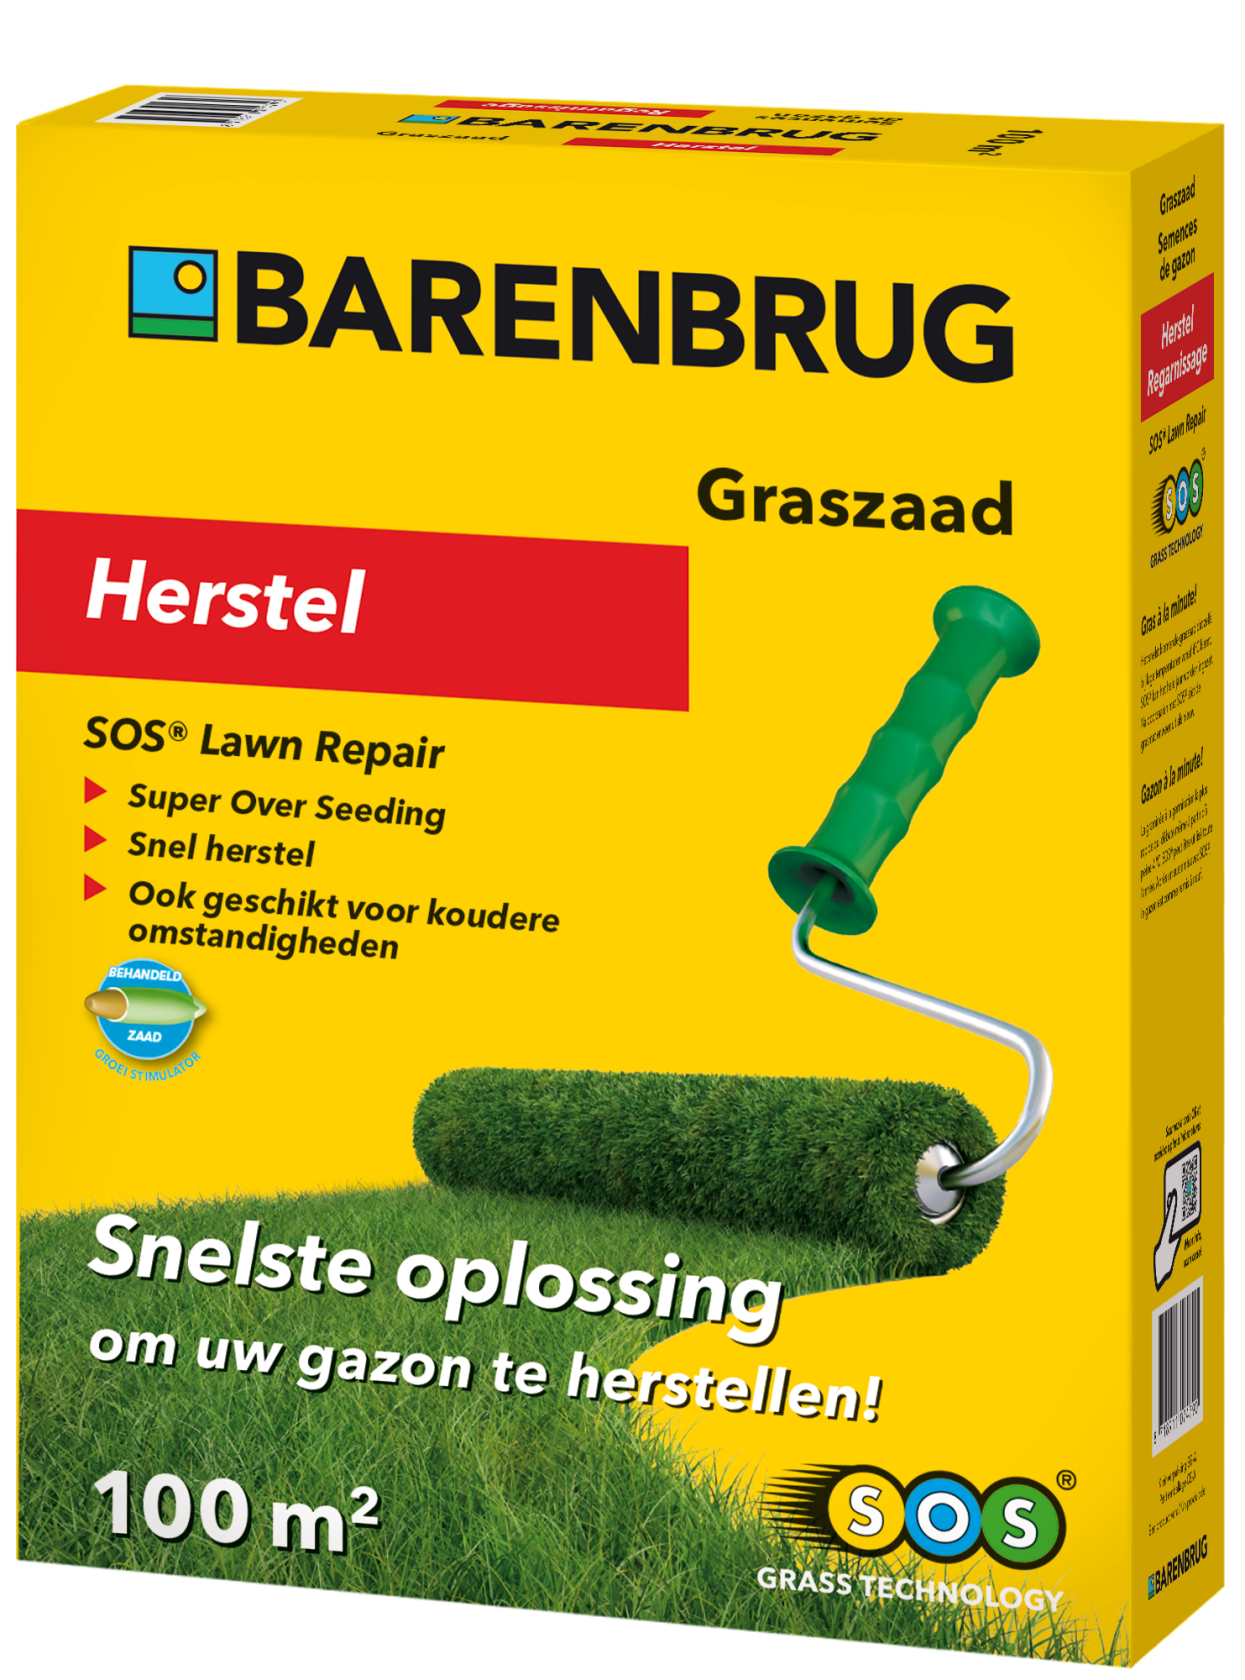 Barenbrug grass seed repair lawn SOS Lawn Repair coated - 2kg for 100m²